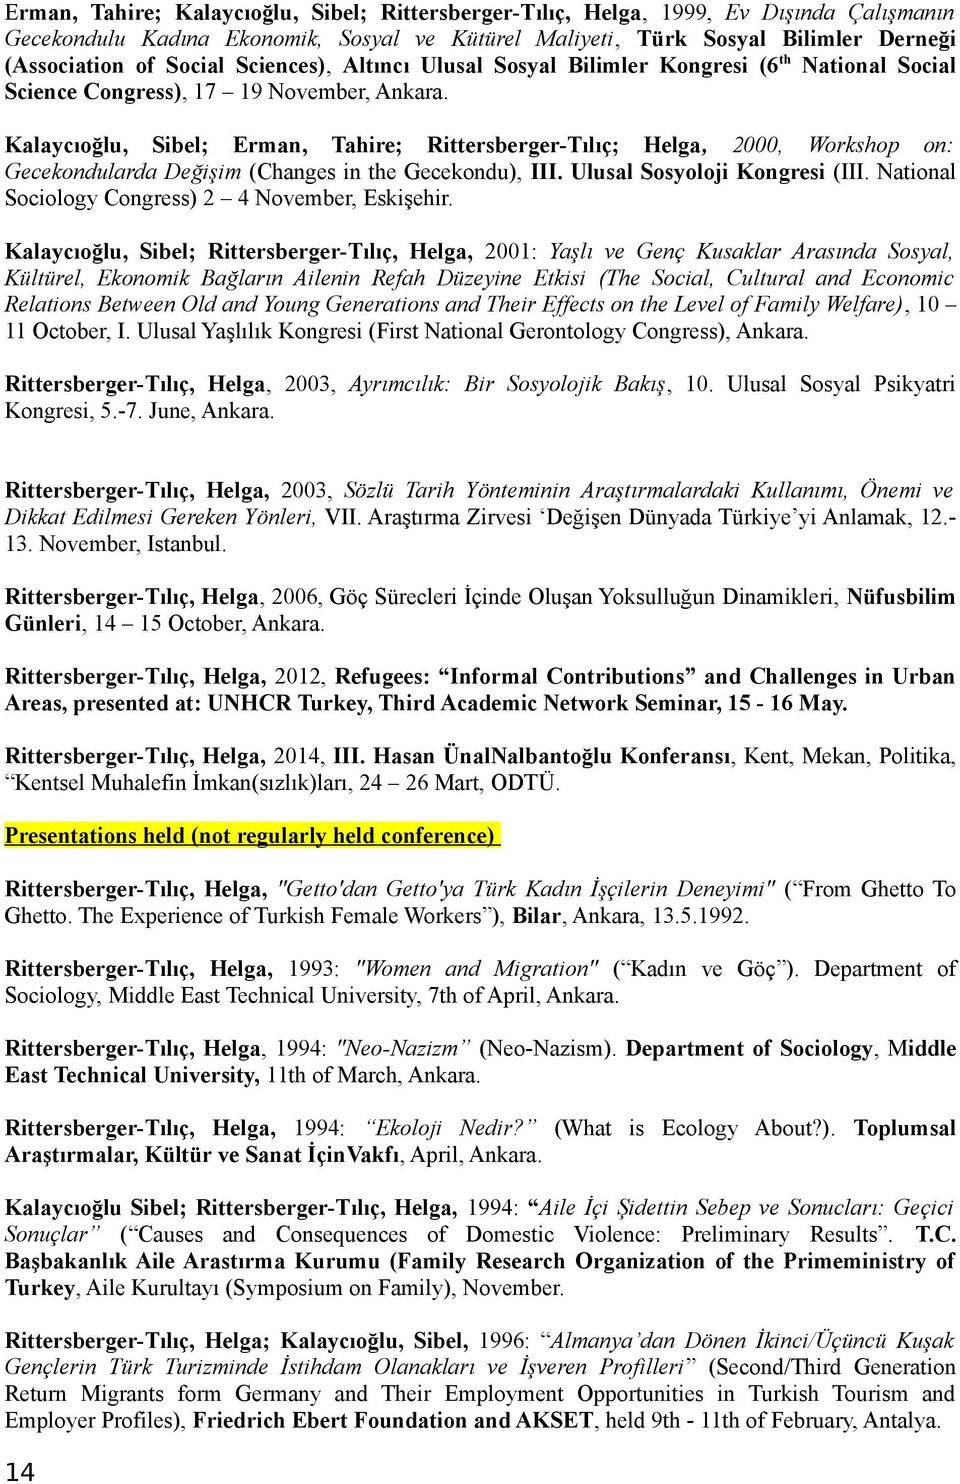 Kalaycıoğlu, Sibel; Erman, Tahire; Rittersberger-Tılıç; Helga, 2000, Workshop on: Gecekondularda Değişim (Changes in the Gecekondu), III. Ulusal Sosyoloji Kongresi (III.